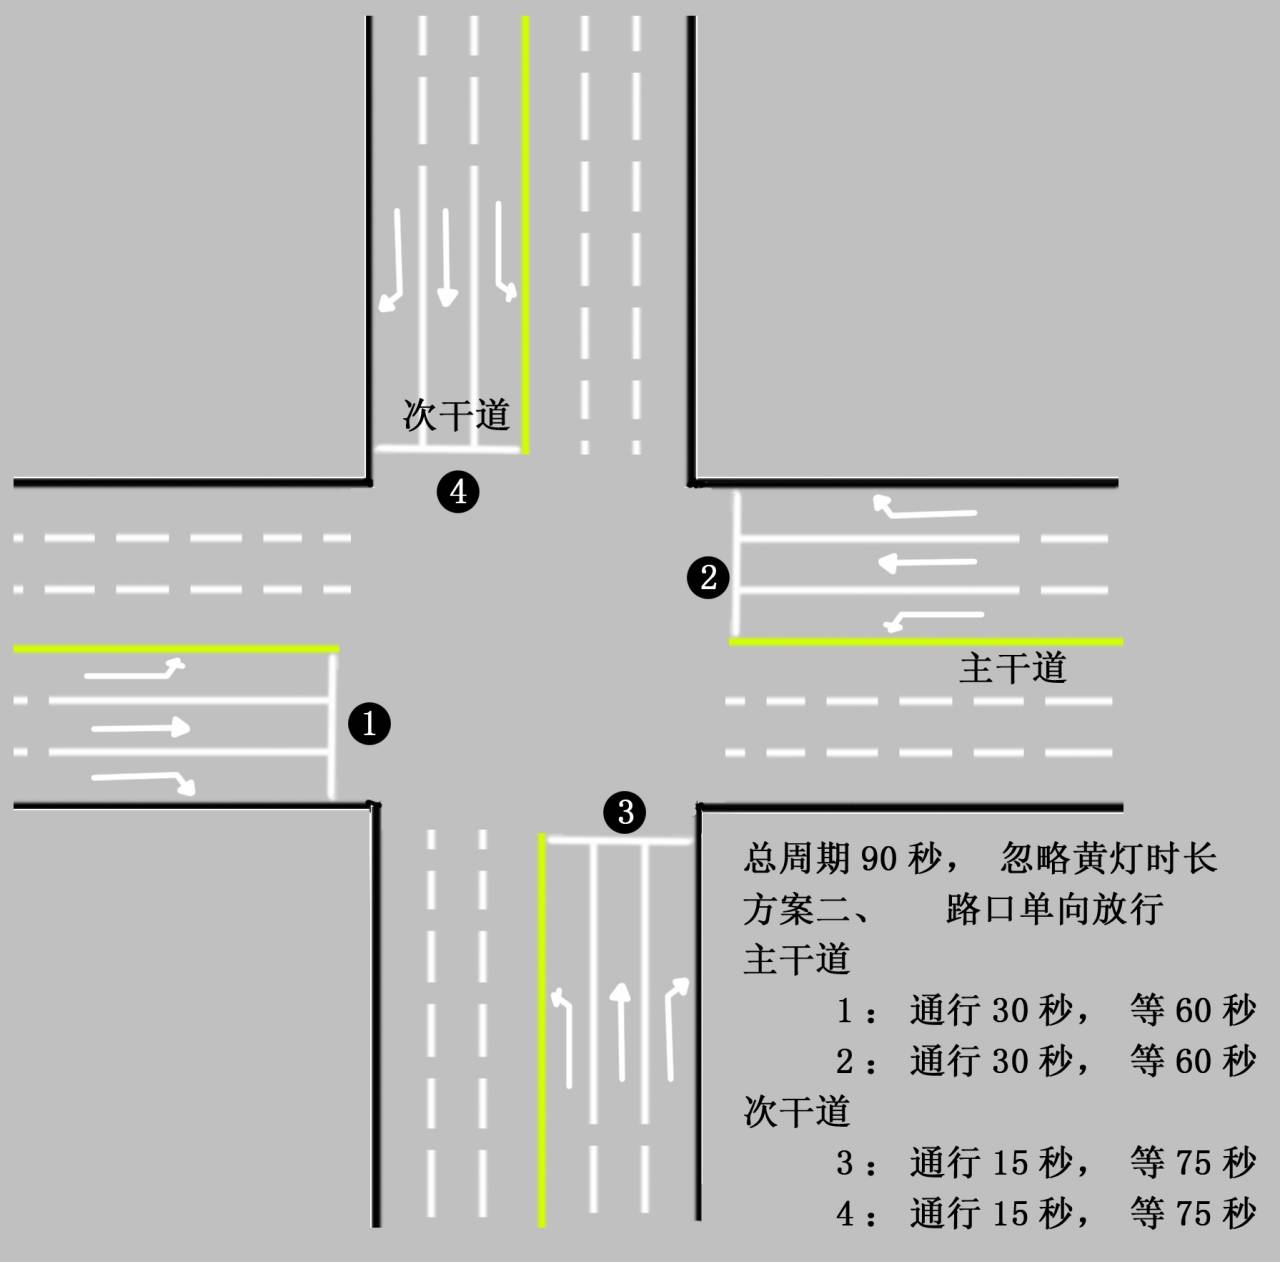 各种路口的道路标线图图片